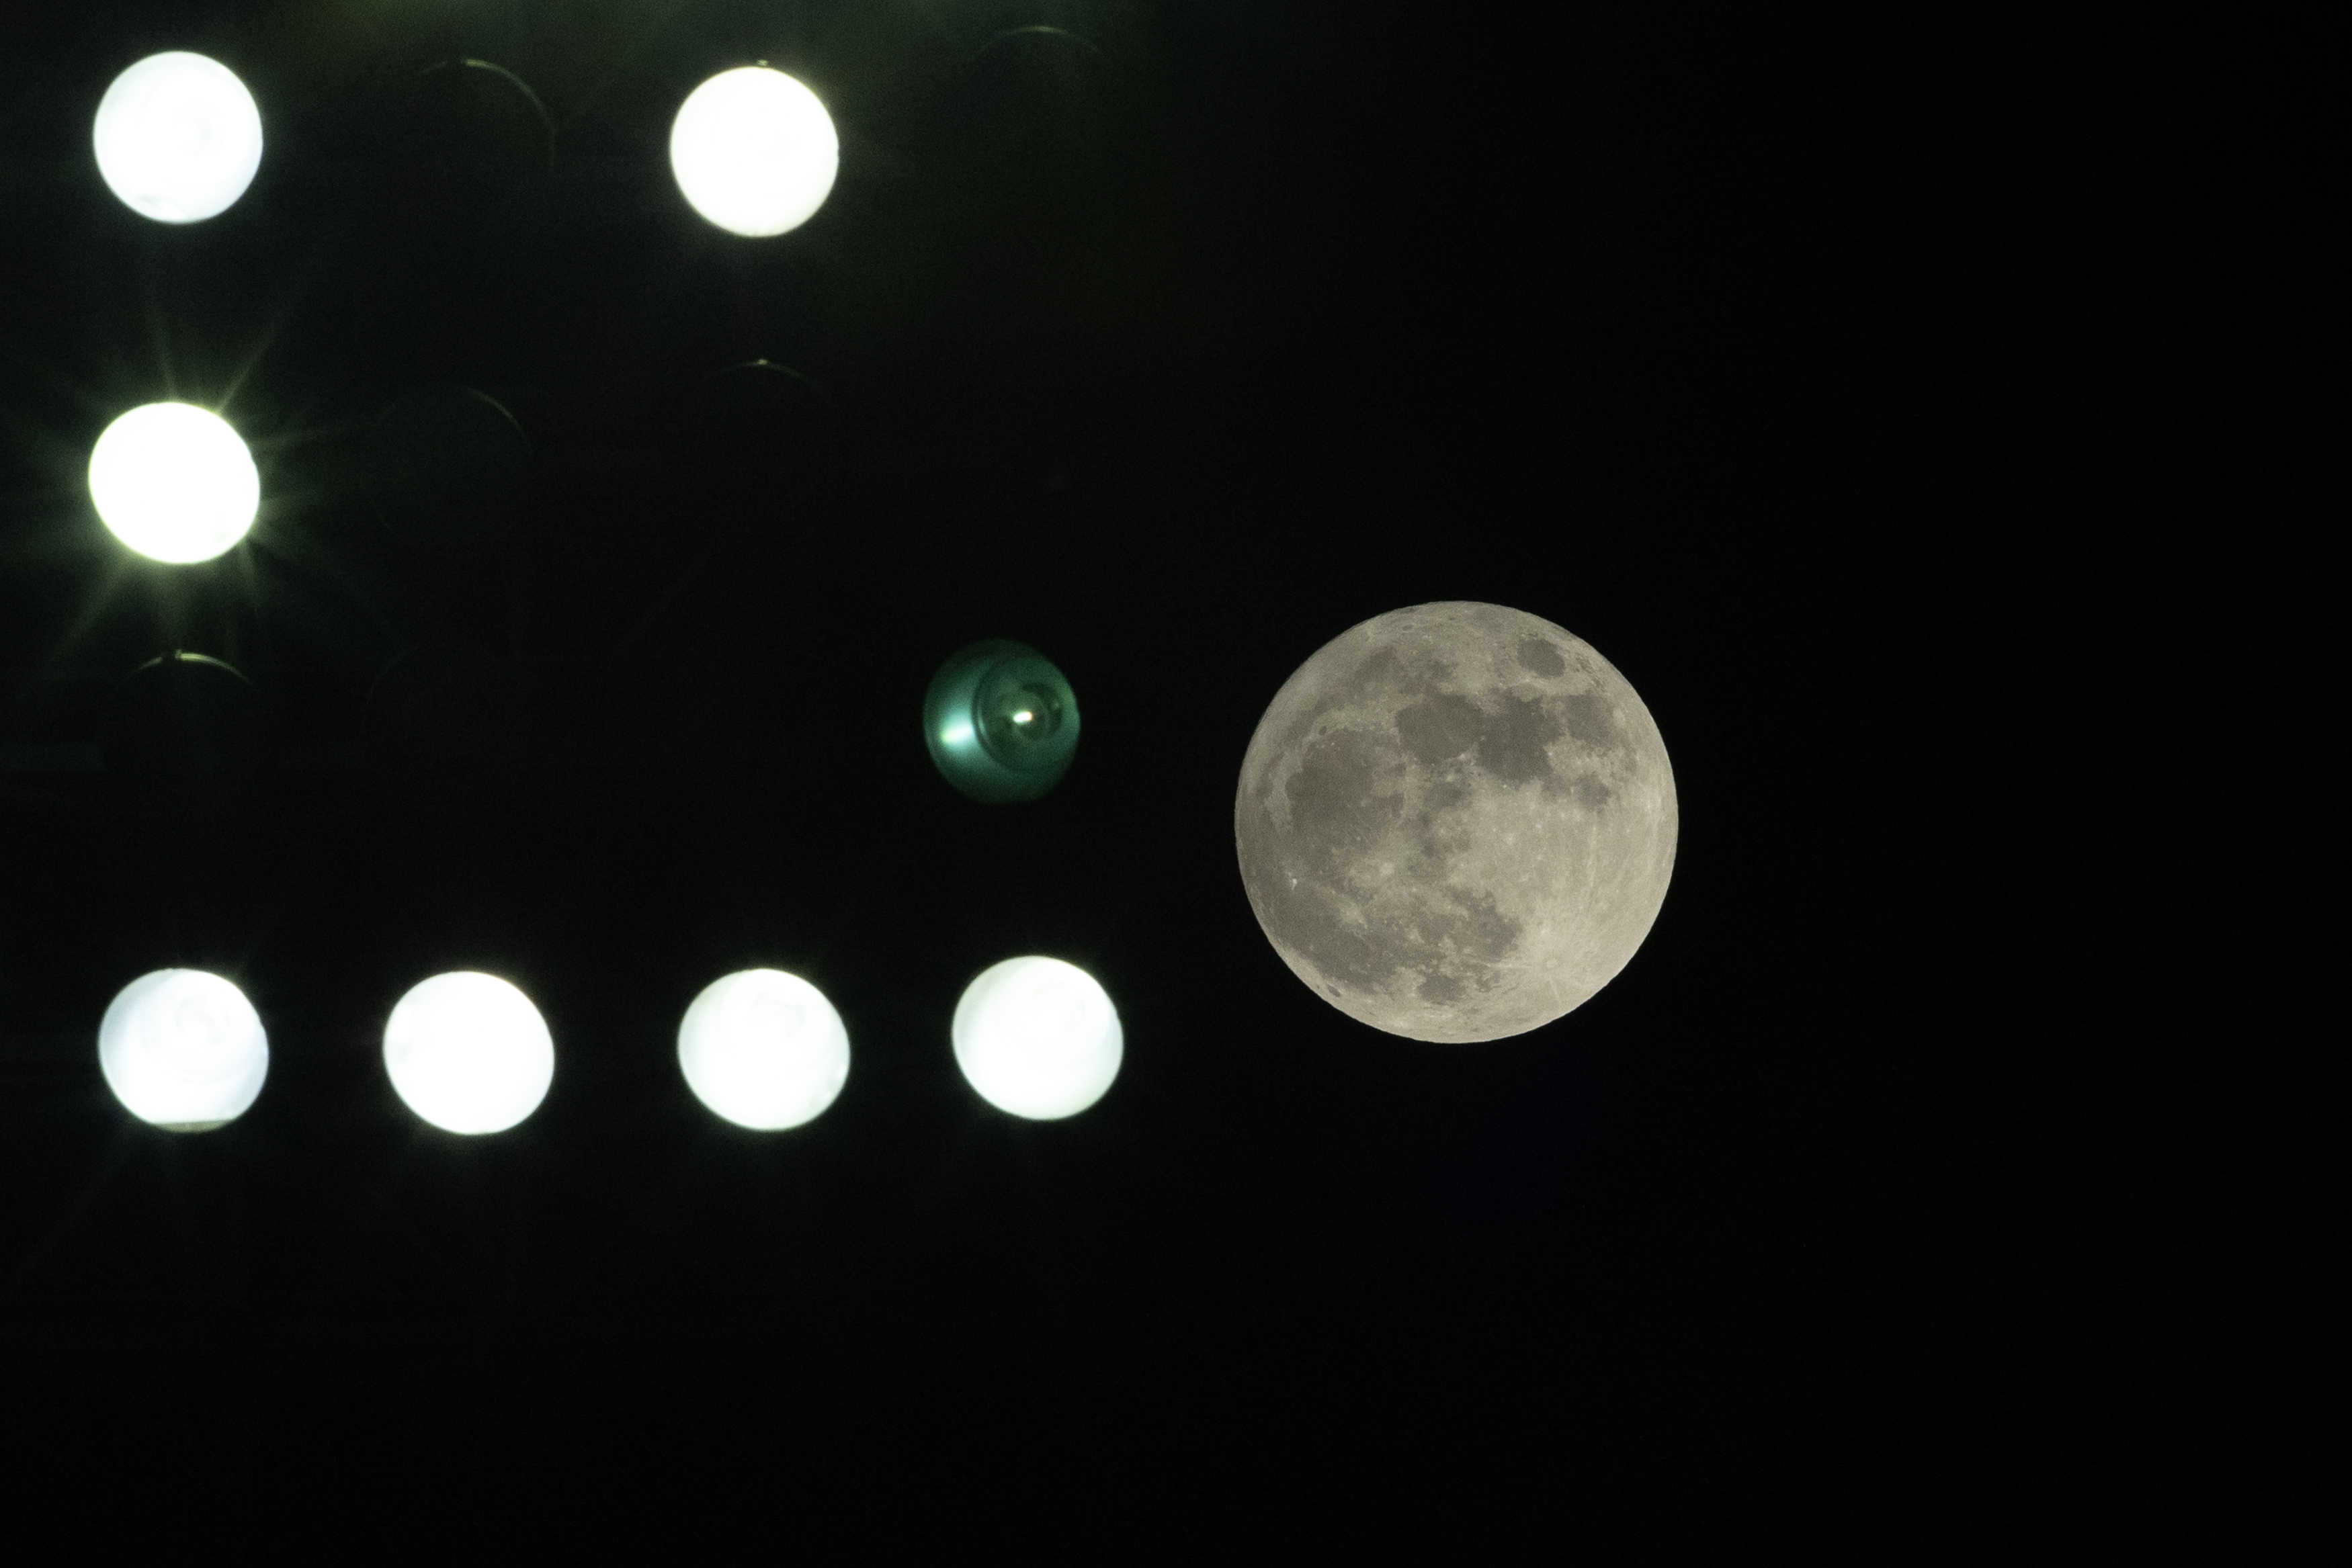 La superluna se asomó entre las luces artificiales del Estadio Olímpico Félix Sánchez